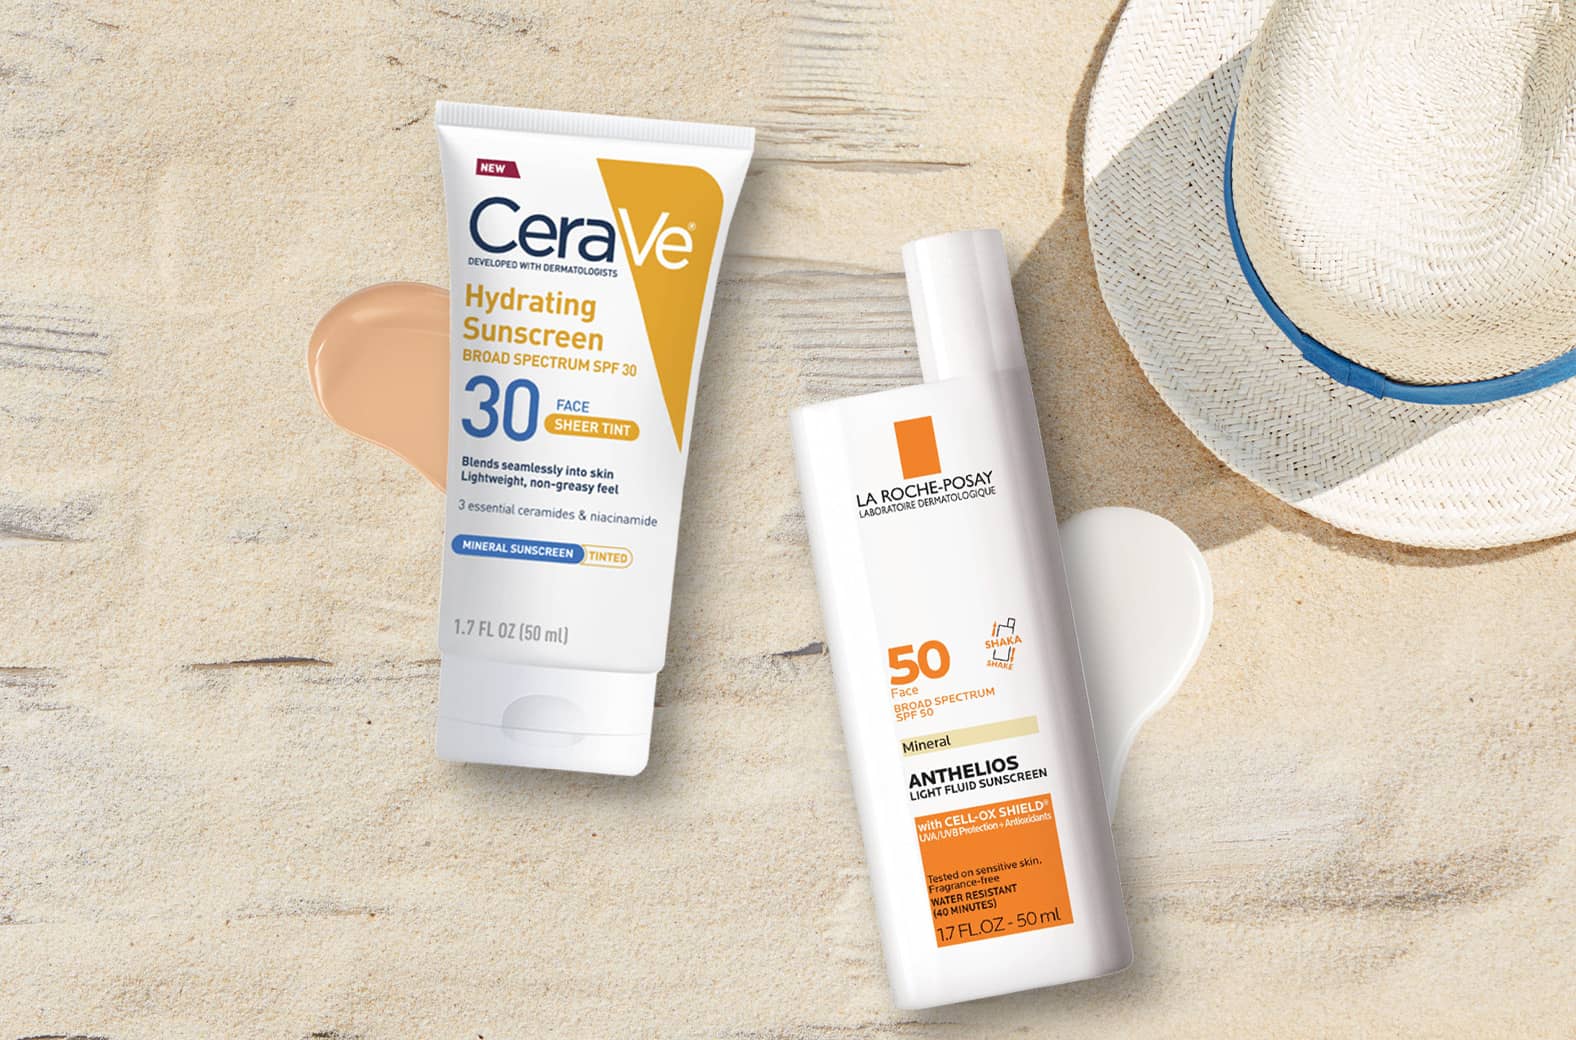 CeraVe and La Roche-Posay facial sun care products